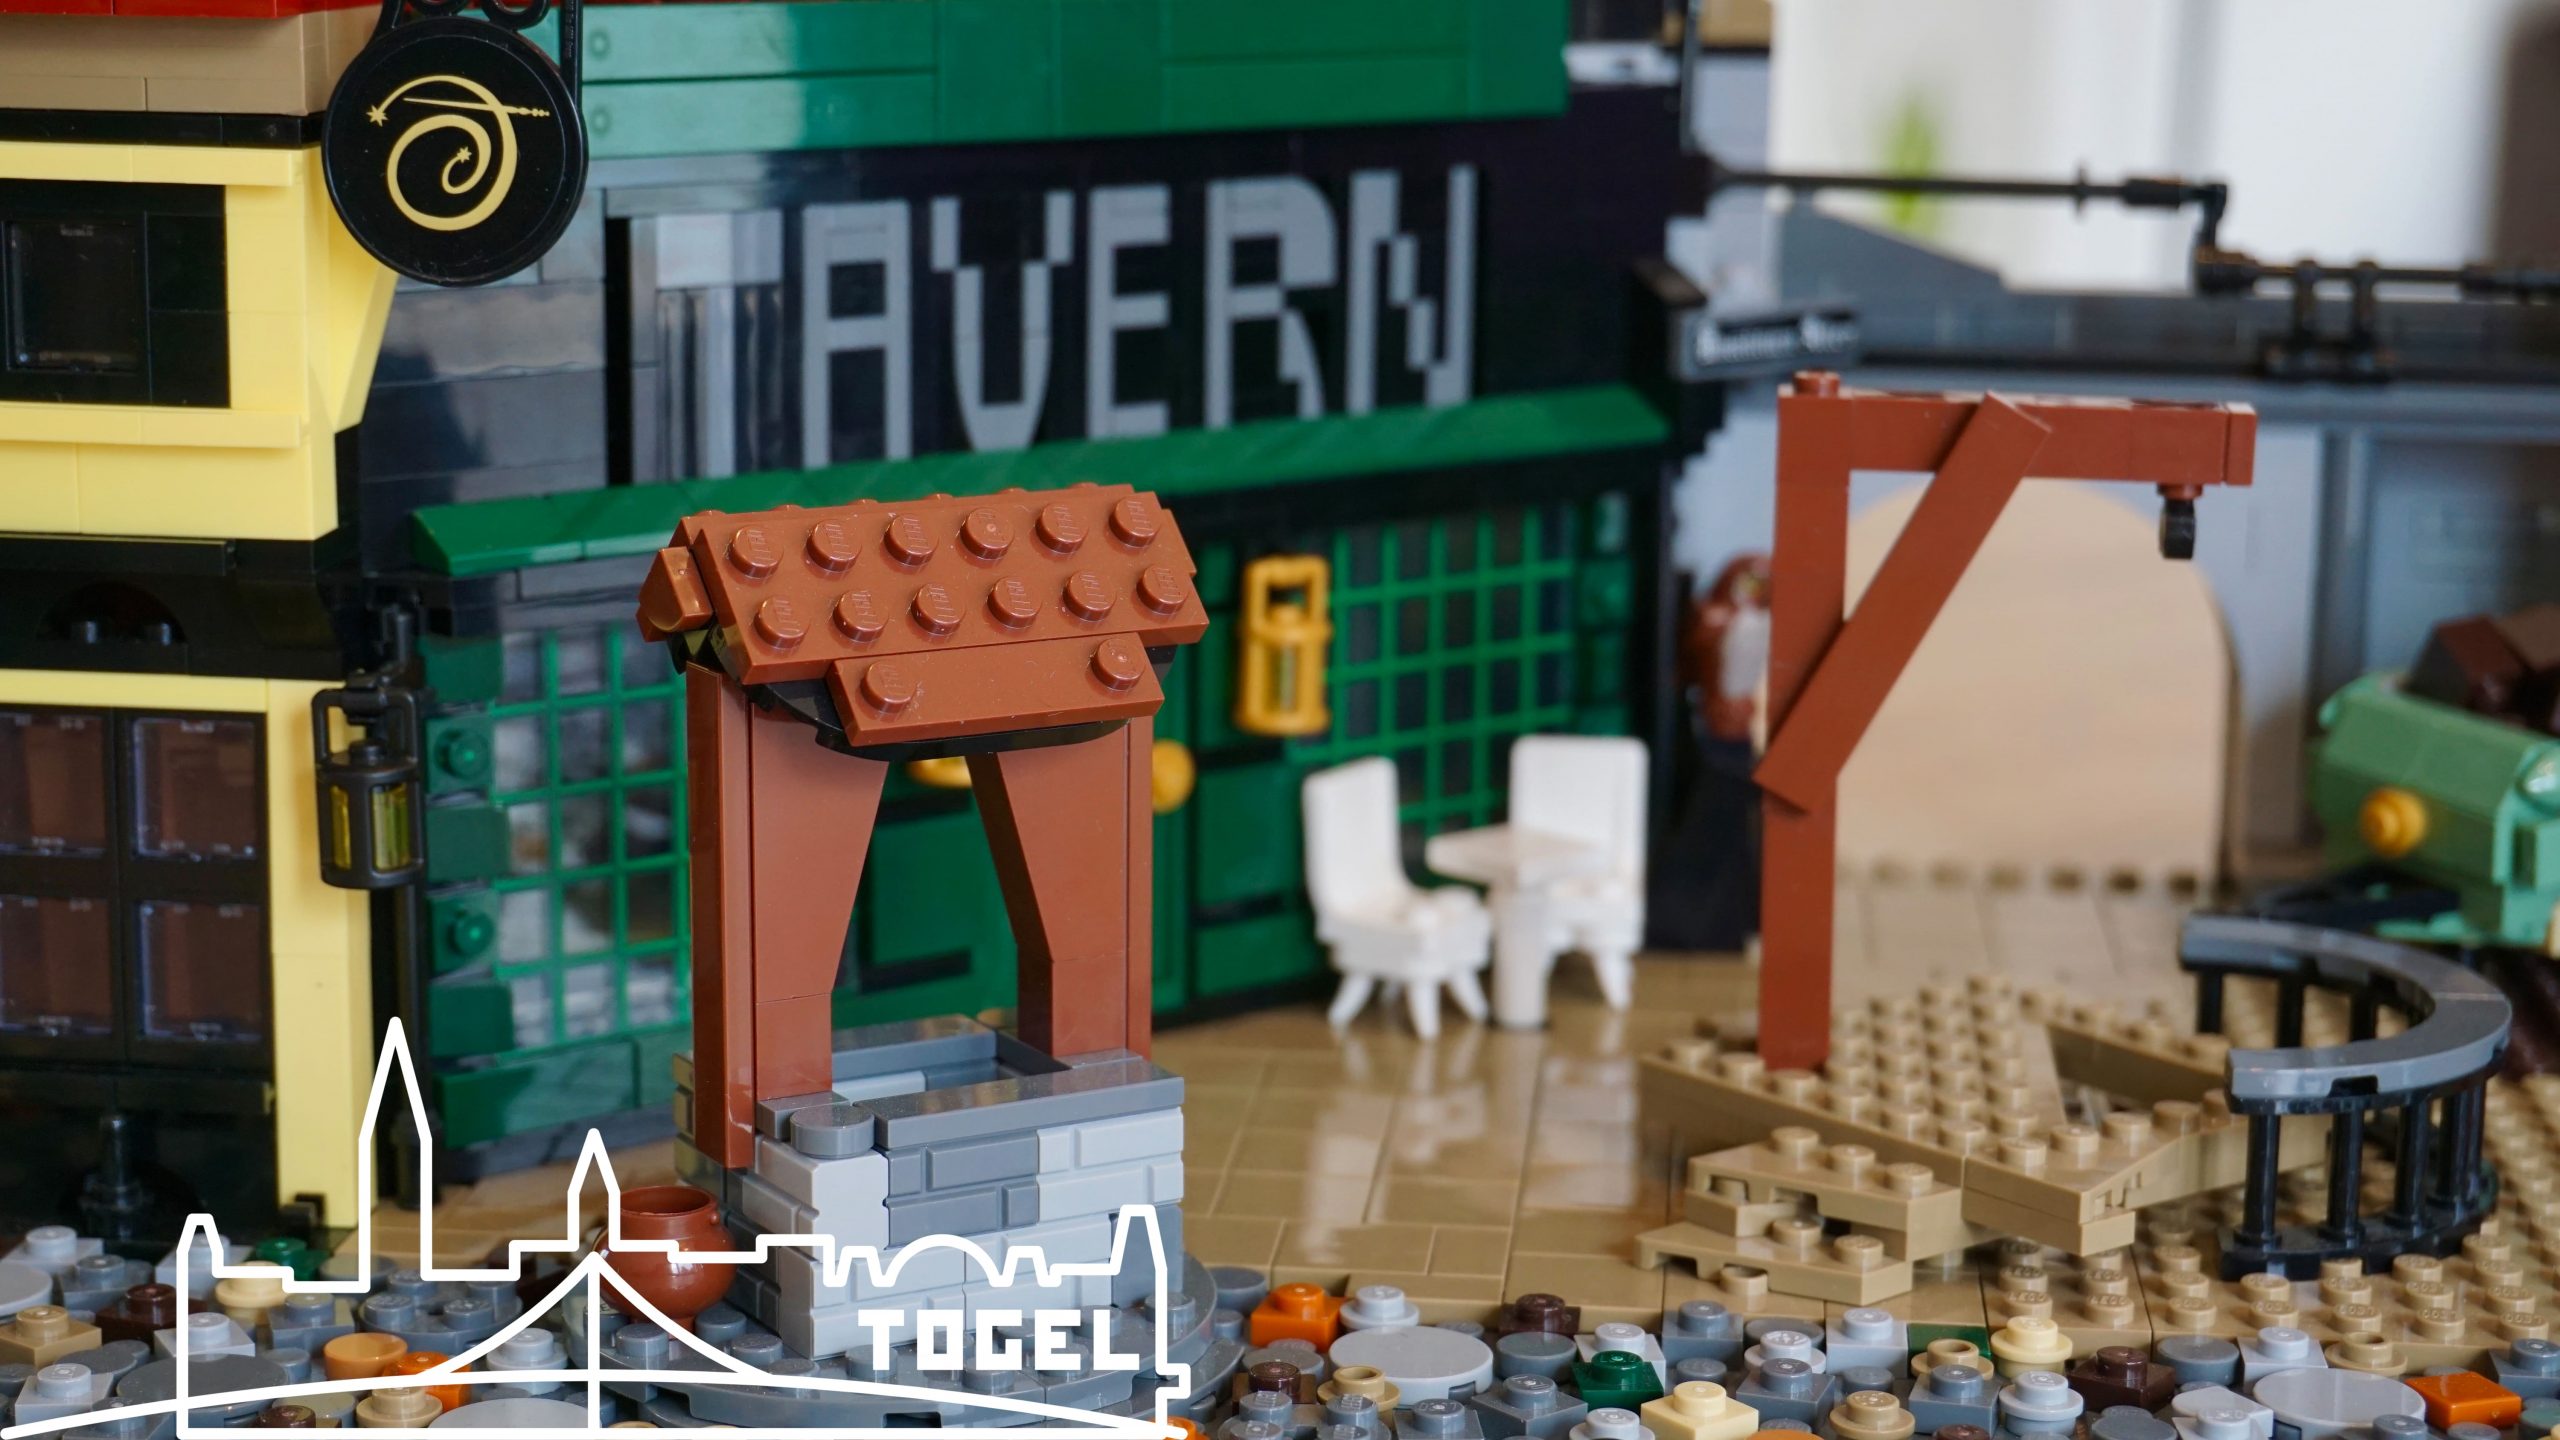 udvikling af grund Niende LEGO MOC Medieval Square by Togeltown | Rebrickable - Build with LEGO